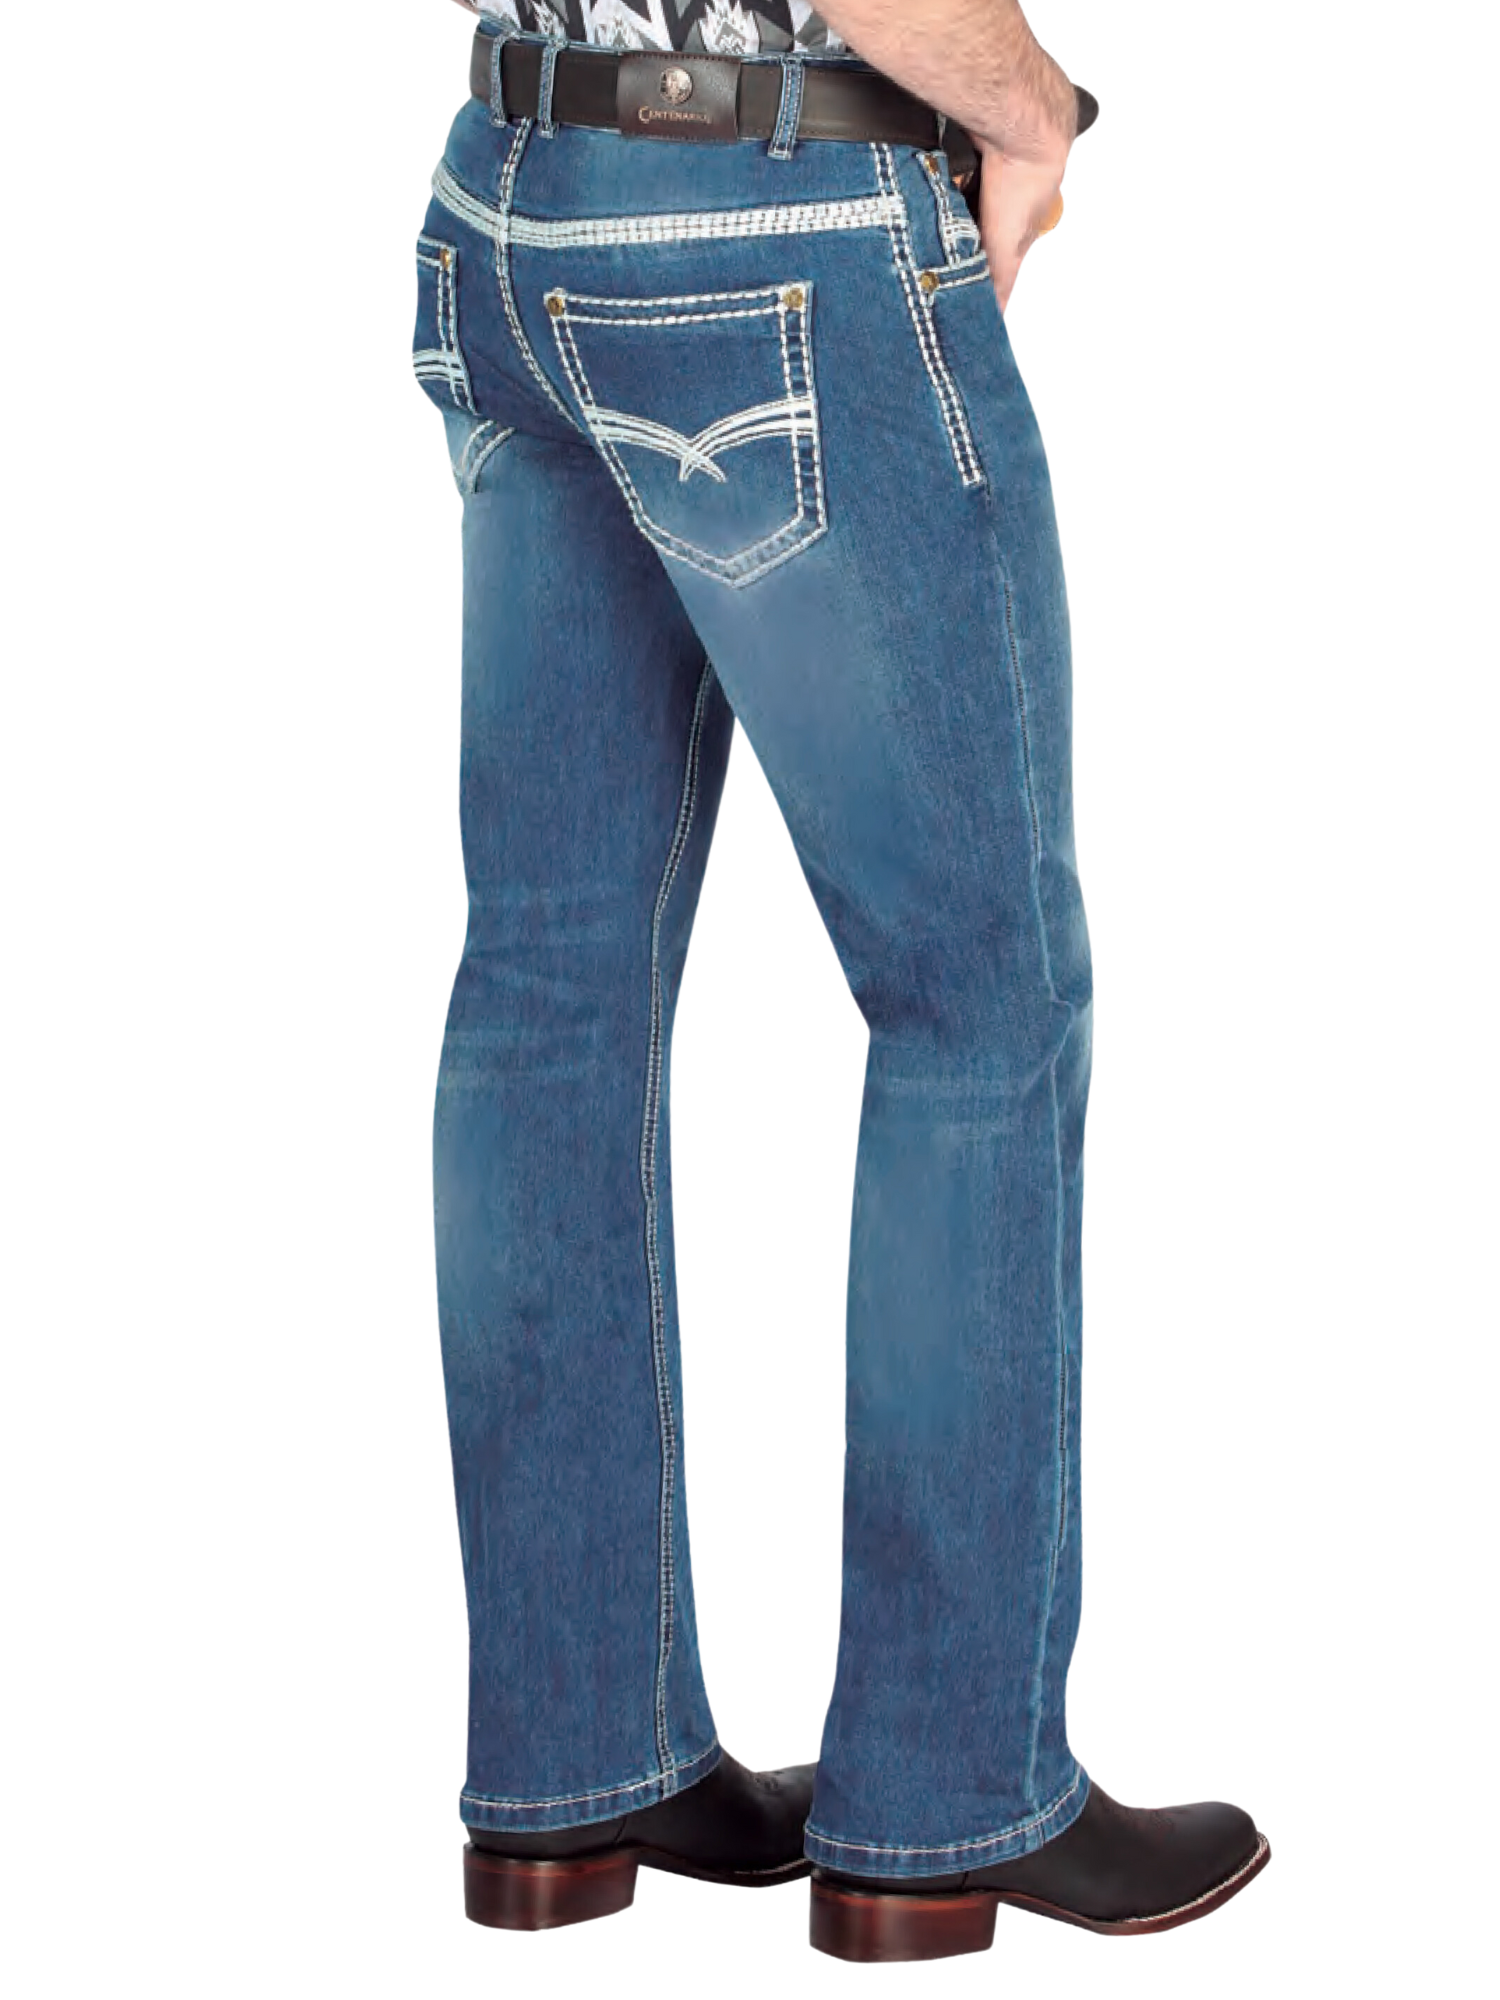 Pantalon Vaquero de Mezclilla Boot Cut Azul para Hombre 'Centenario' - ID: 44845 Denim Jeans Centenario 